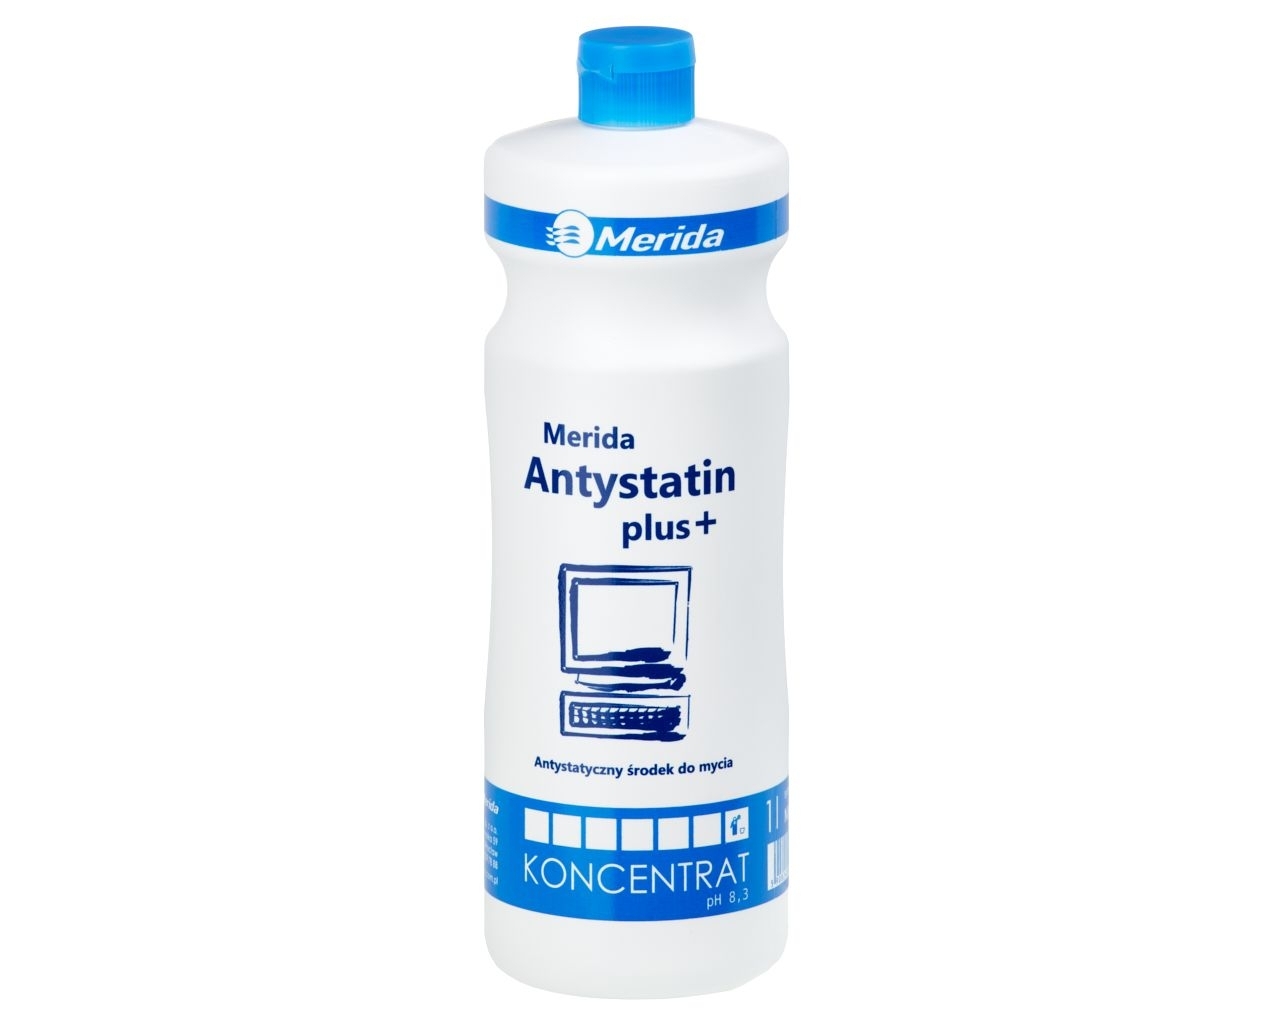 MERIDA ANTYSTATIN PLUS+ Antystatyczny środek do mycia powierzchni z tworzyw sztucznych, butelka 1 l